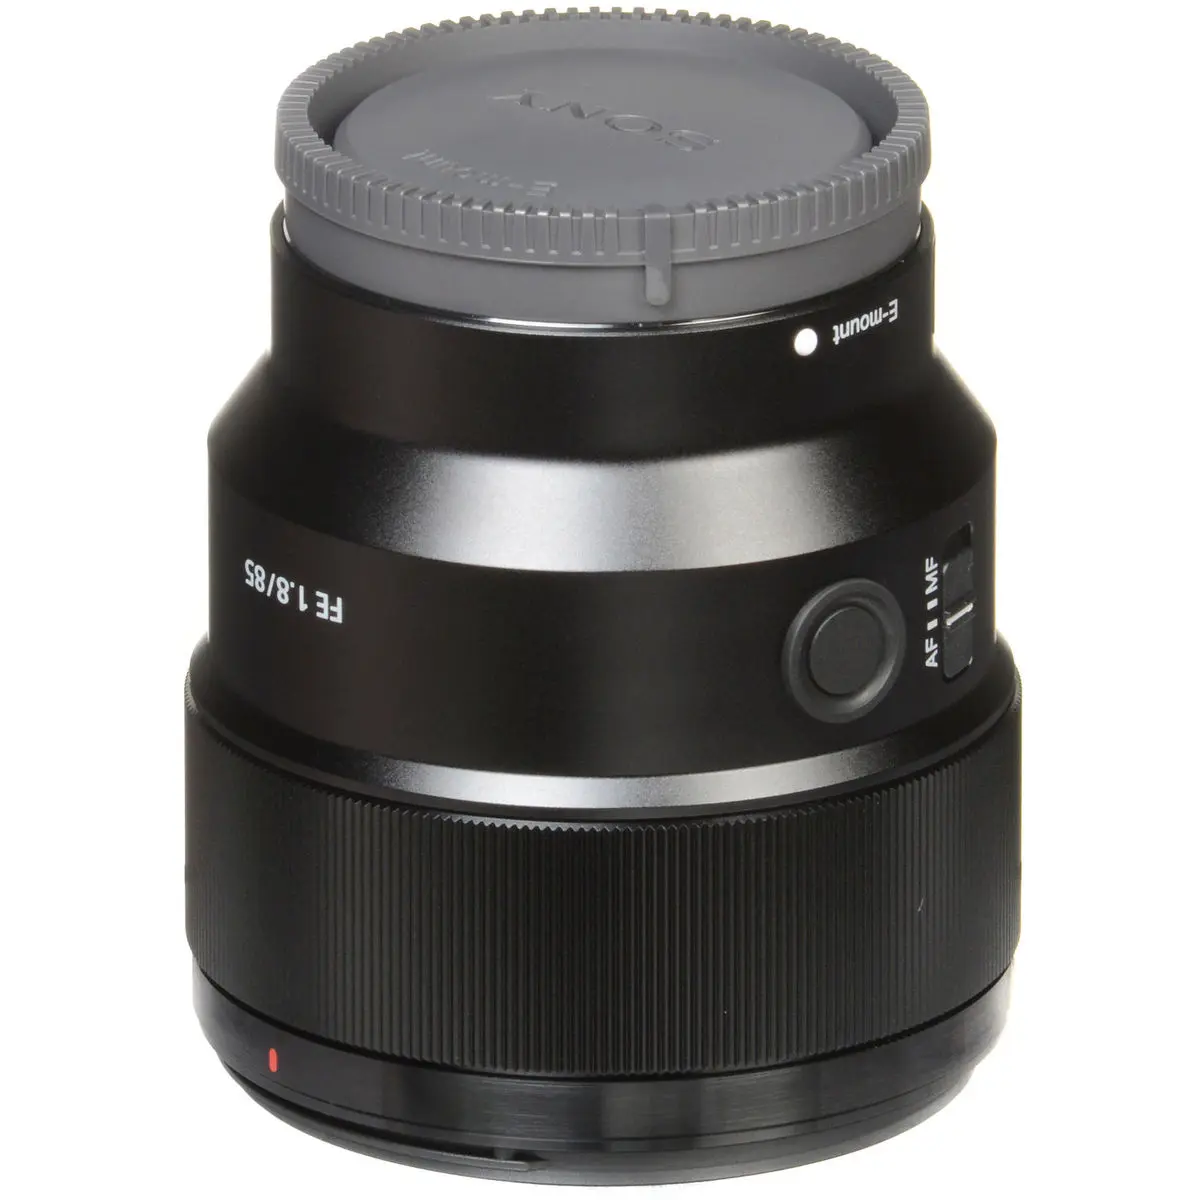 4. Sony FE 85mm F1.8 F/1.8 SEL85F18 E-Mount Full Frame Lens